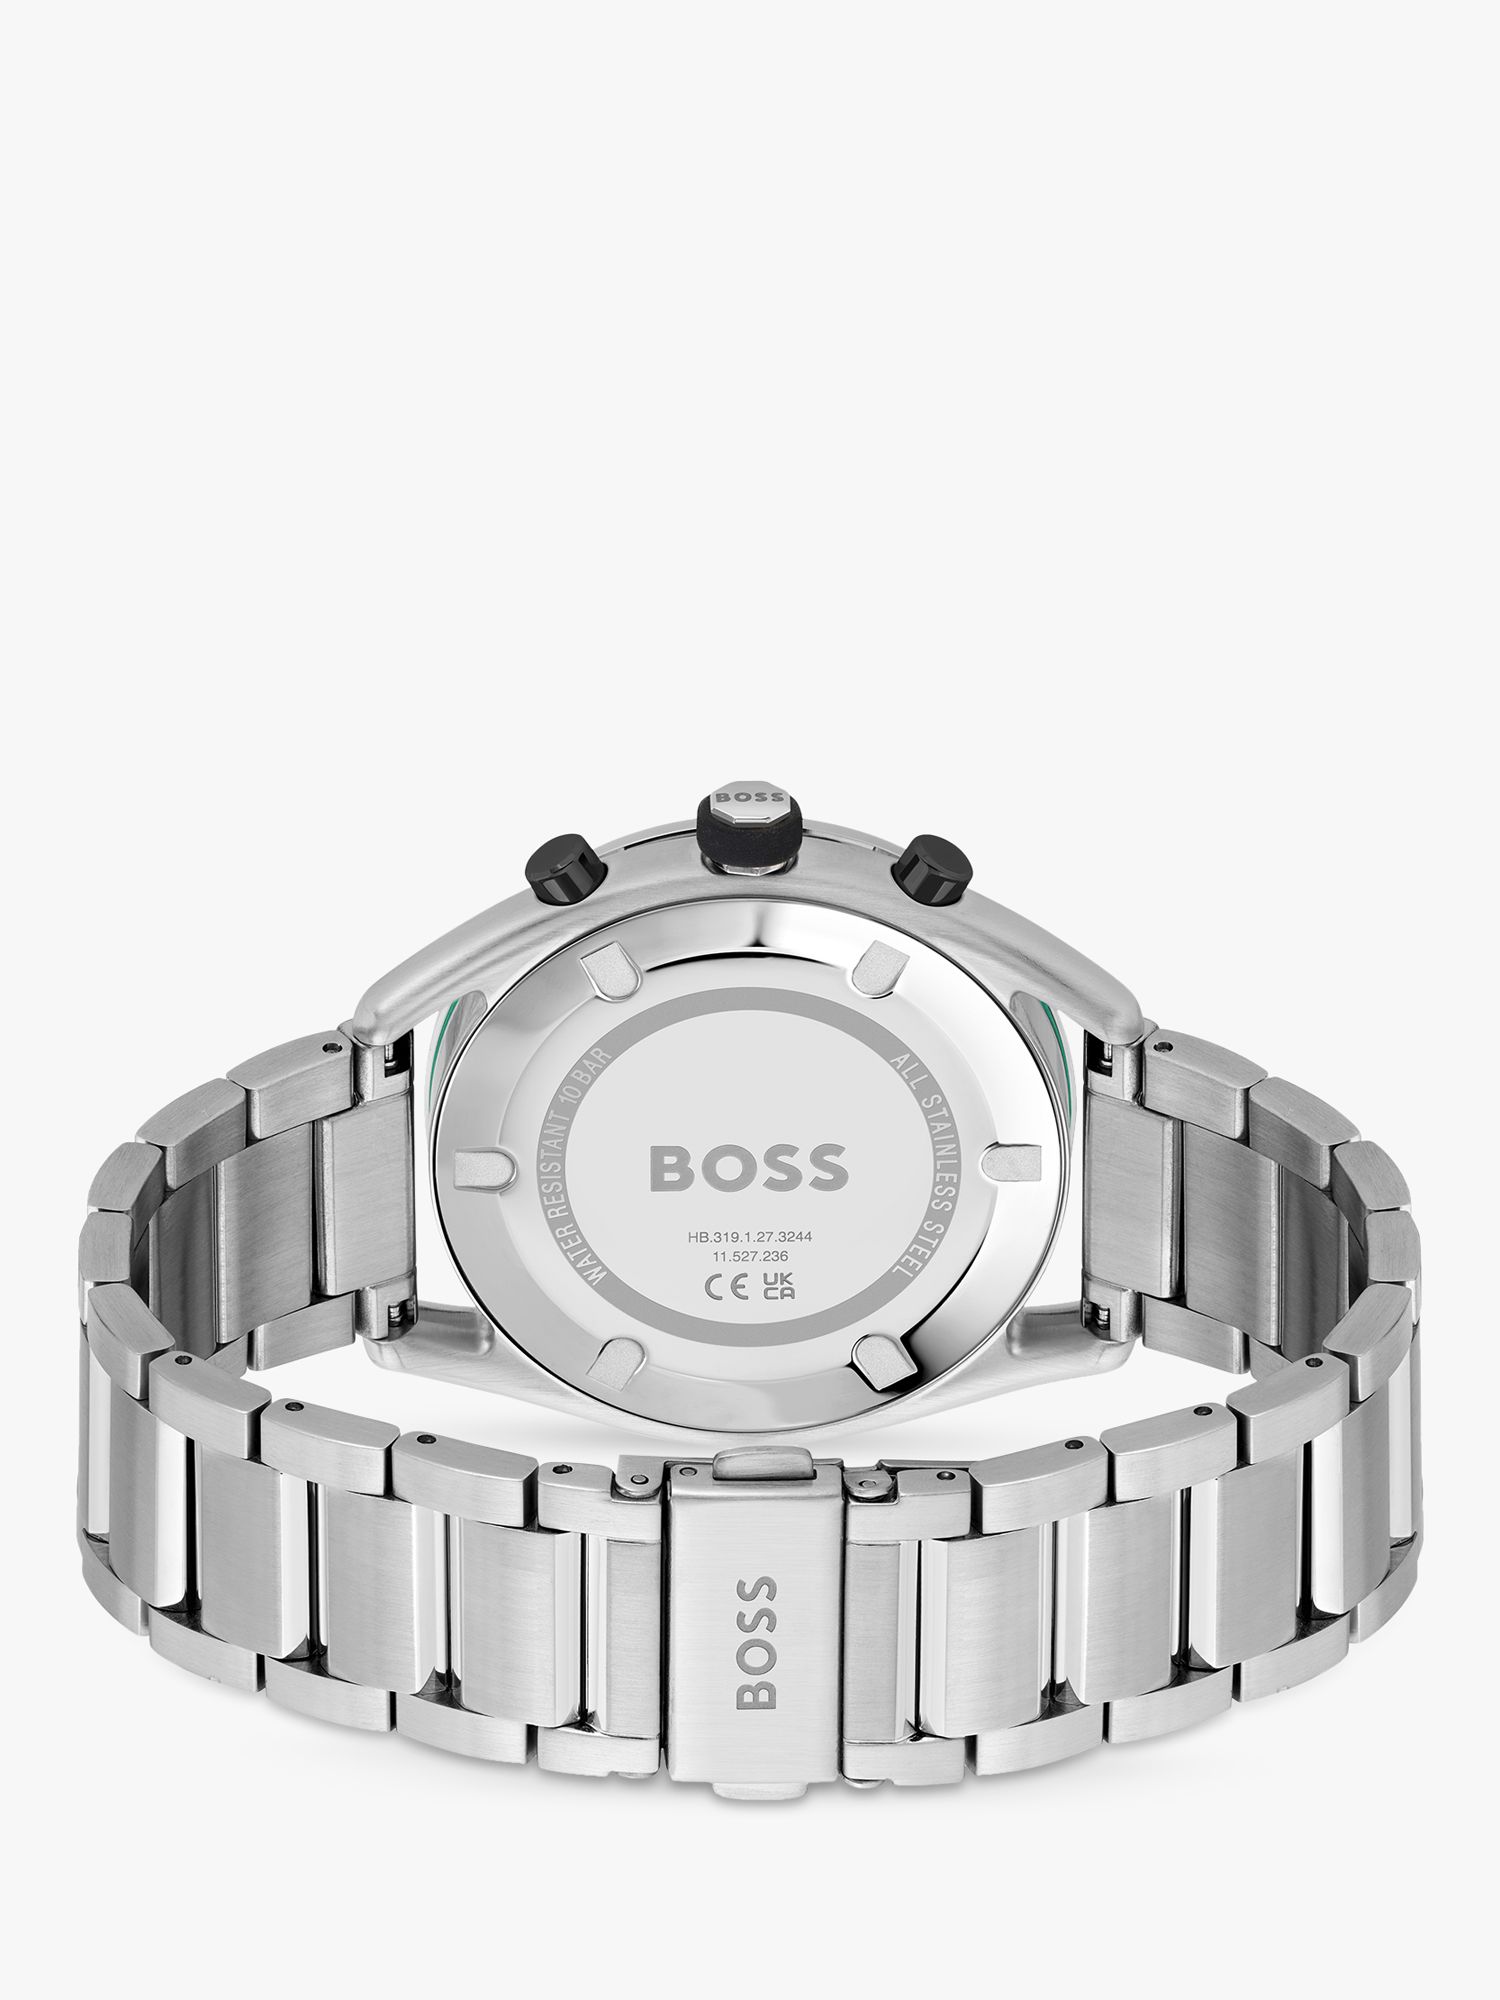 Silver/Black Chronograph Centre BOSS 1514023 Strap Bracelet Men\'s Watch, Court